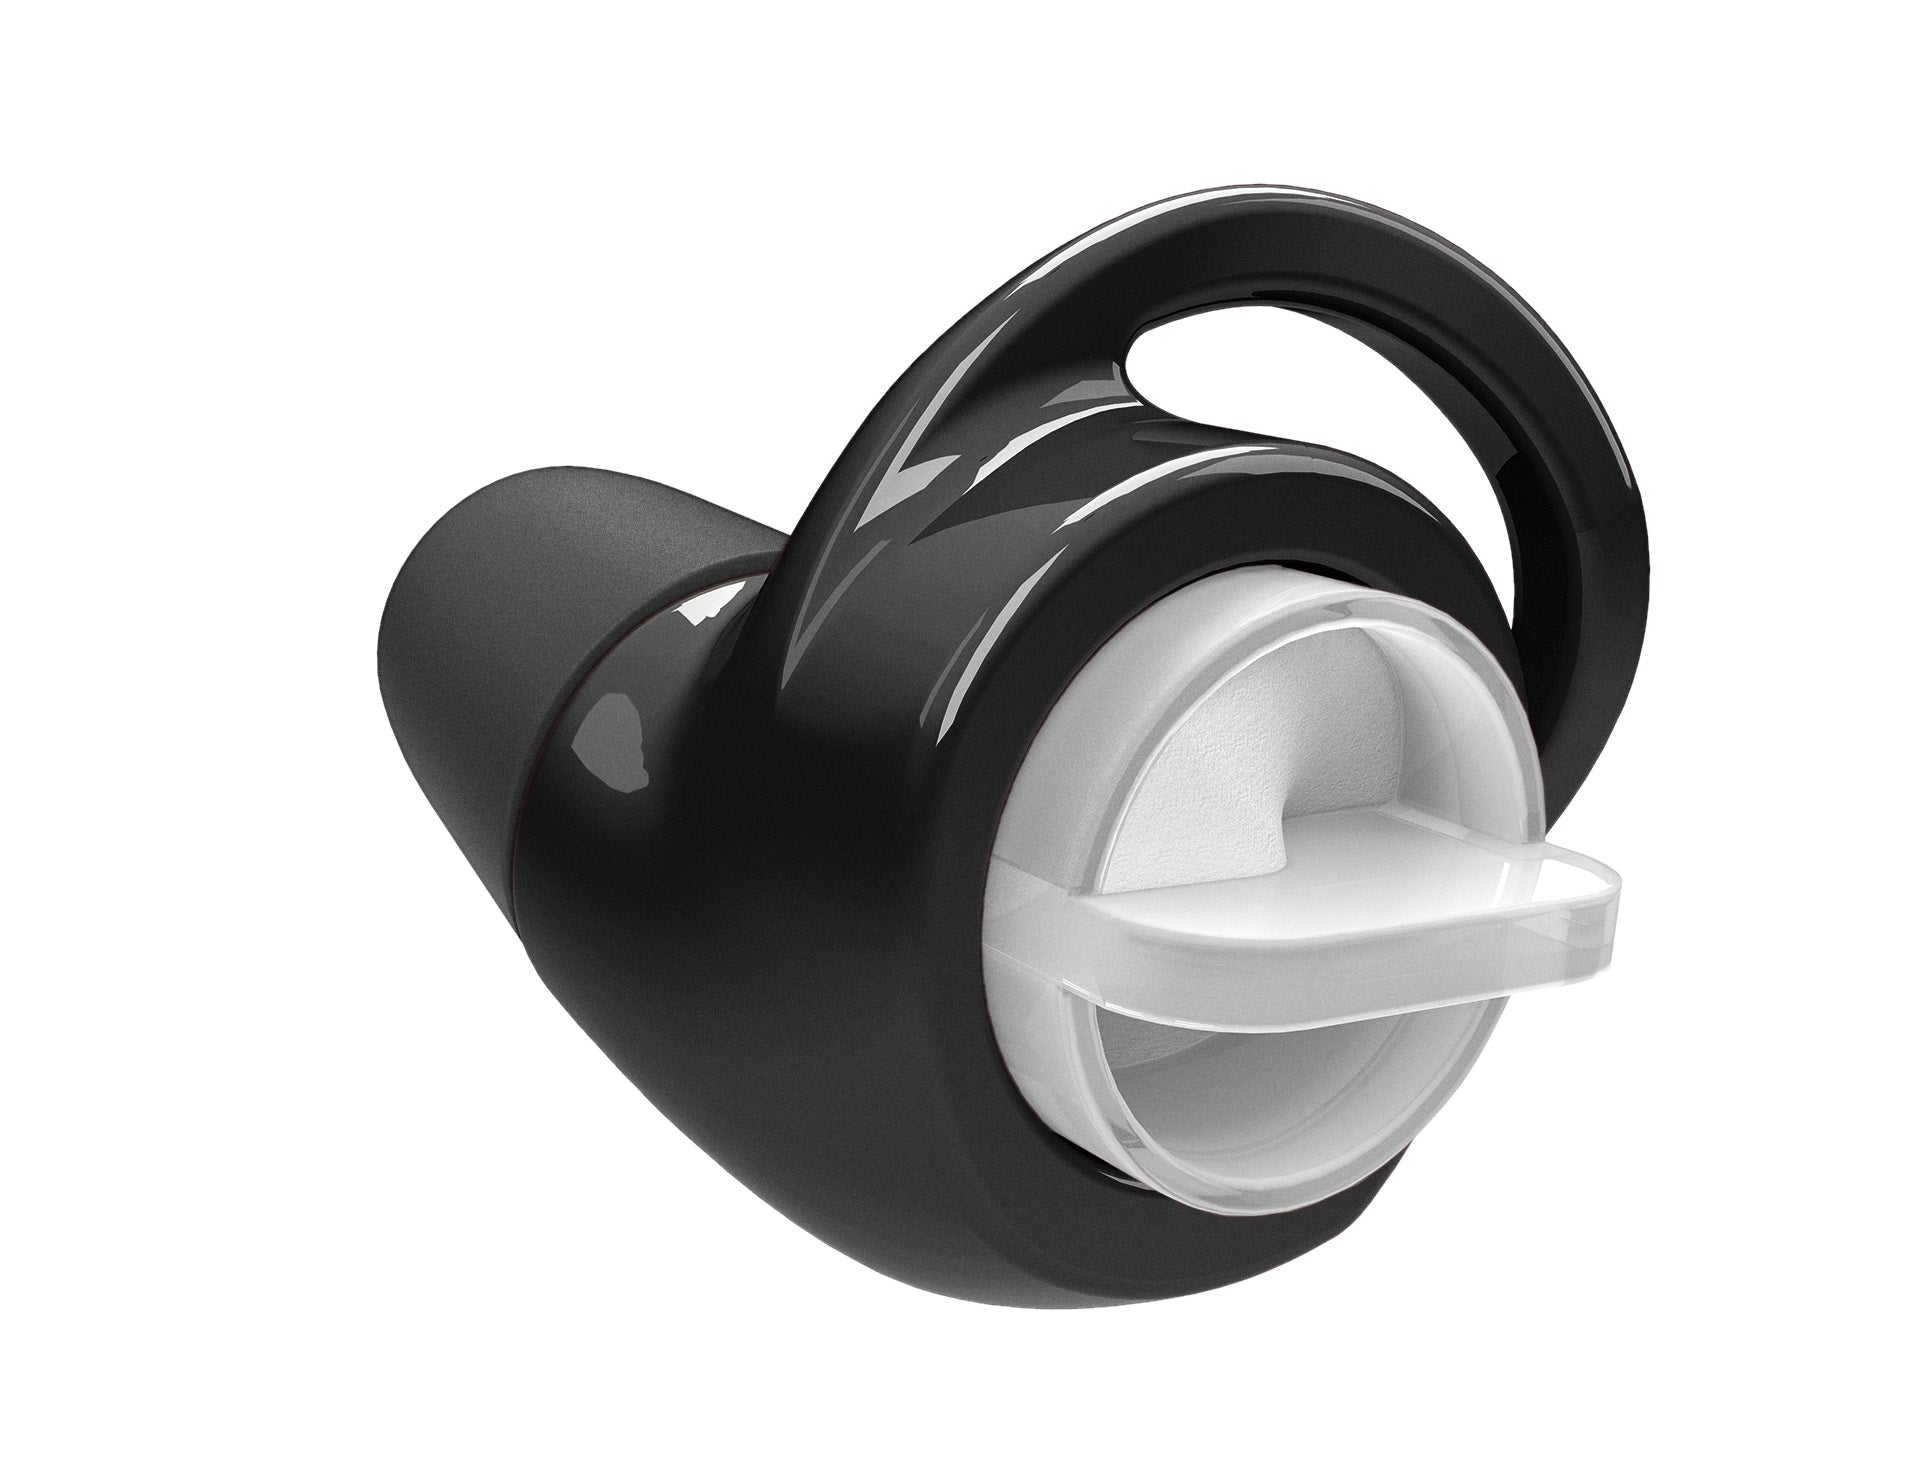 Adjustable Earplug & Wired Earphone Package